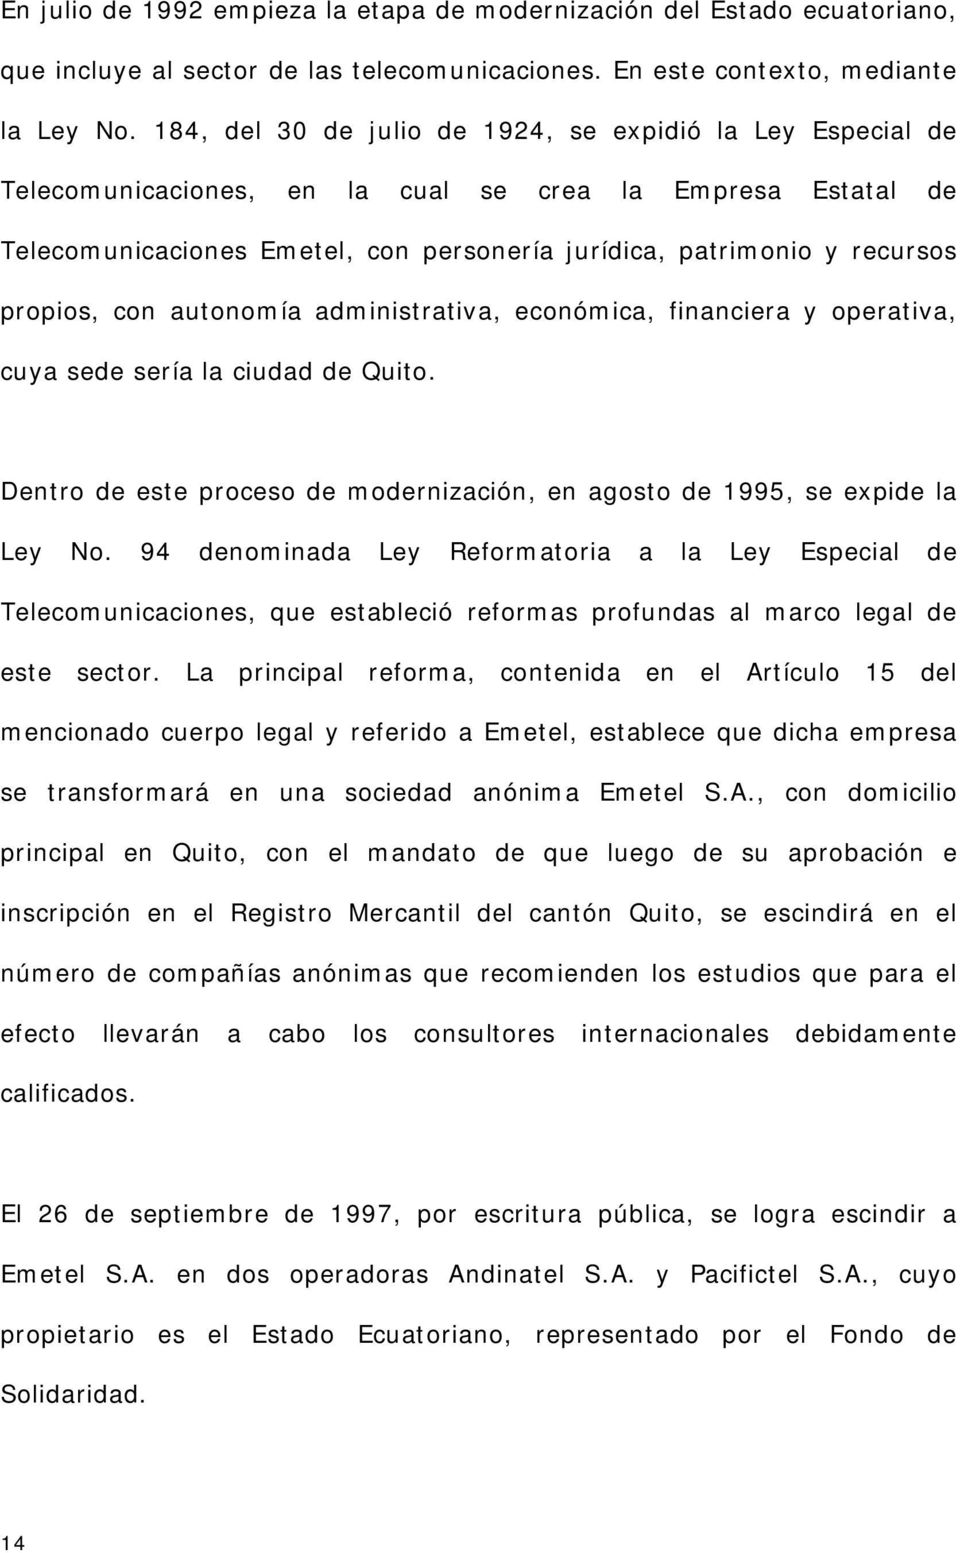 propios, con autonomía administrativa, económica, financiera y operativa, cuya sede sería la ciudad de Quito. Dentro de este proceso de modernización, en agosto de 1995, se expide la Ley No.